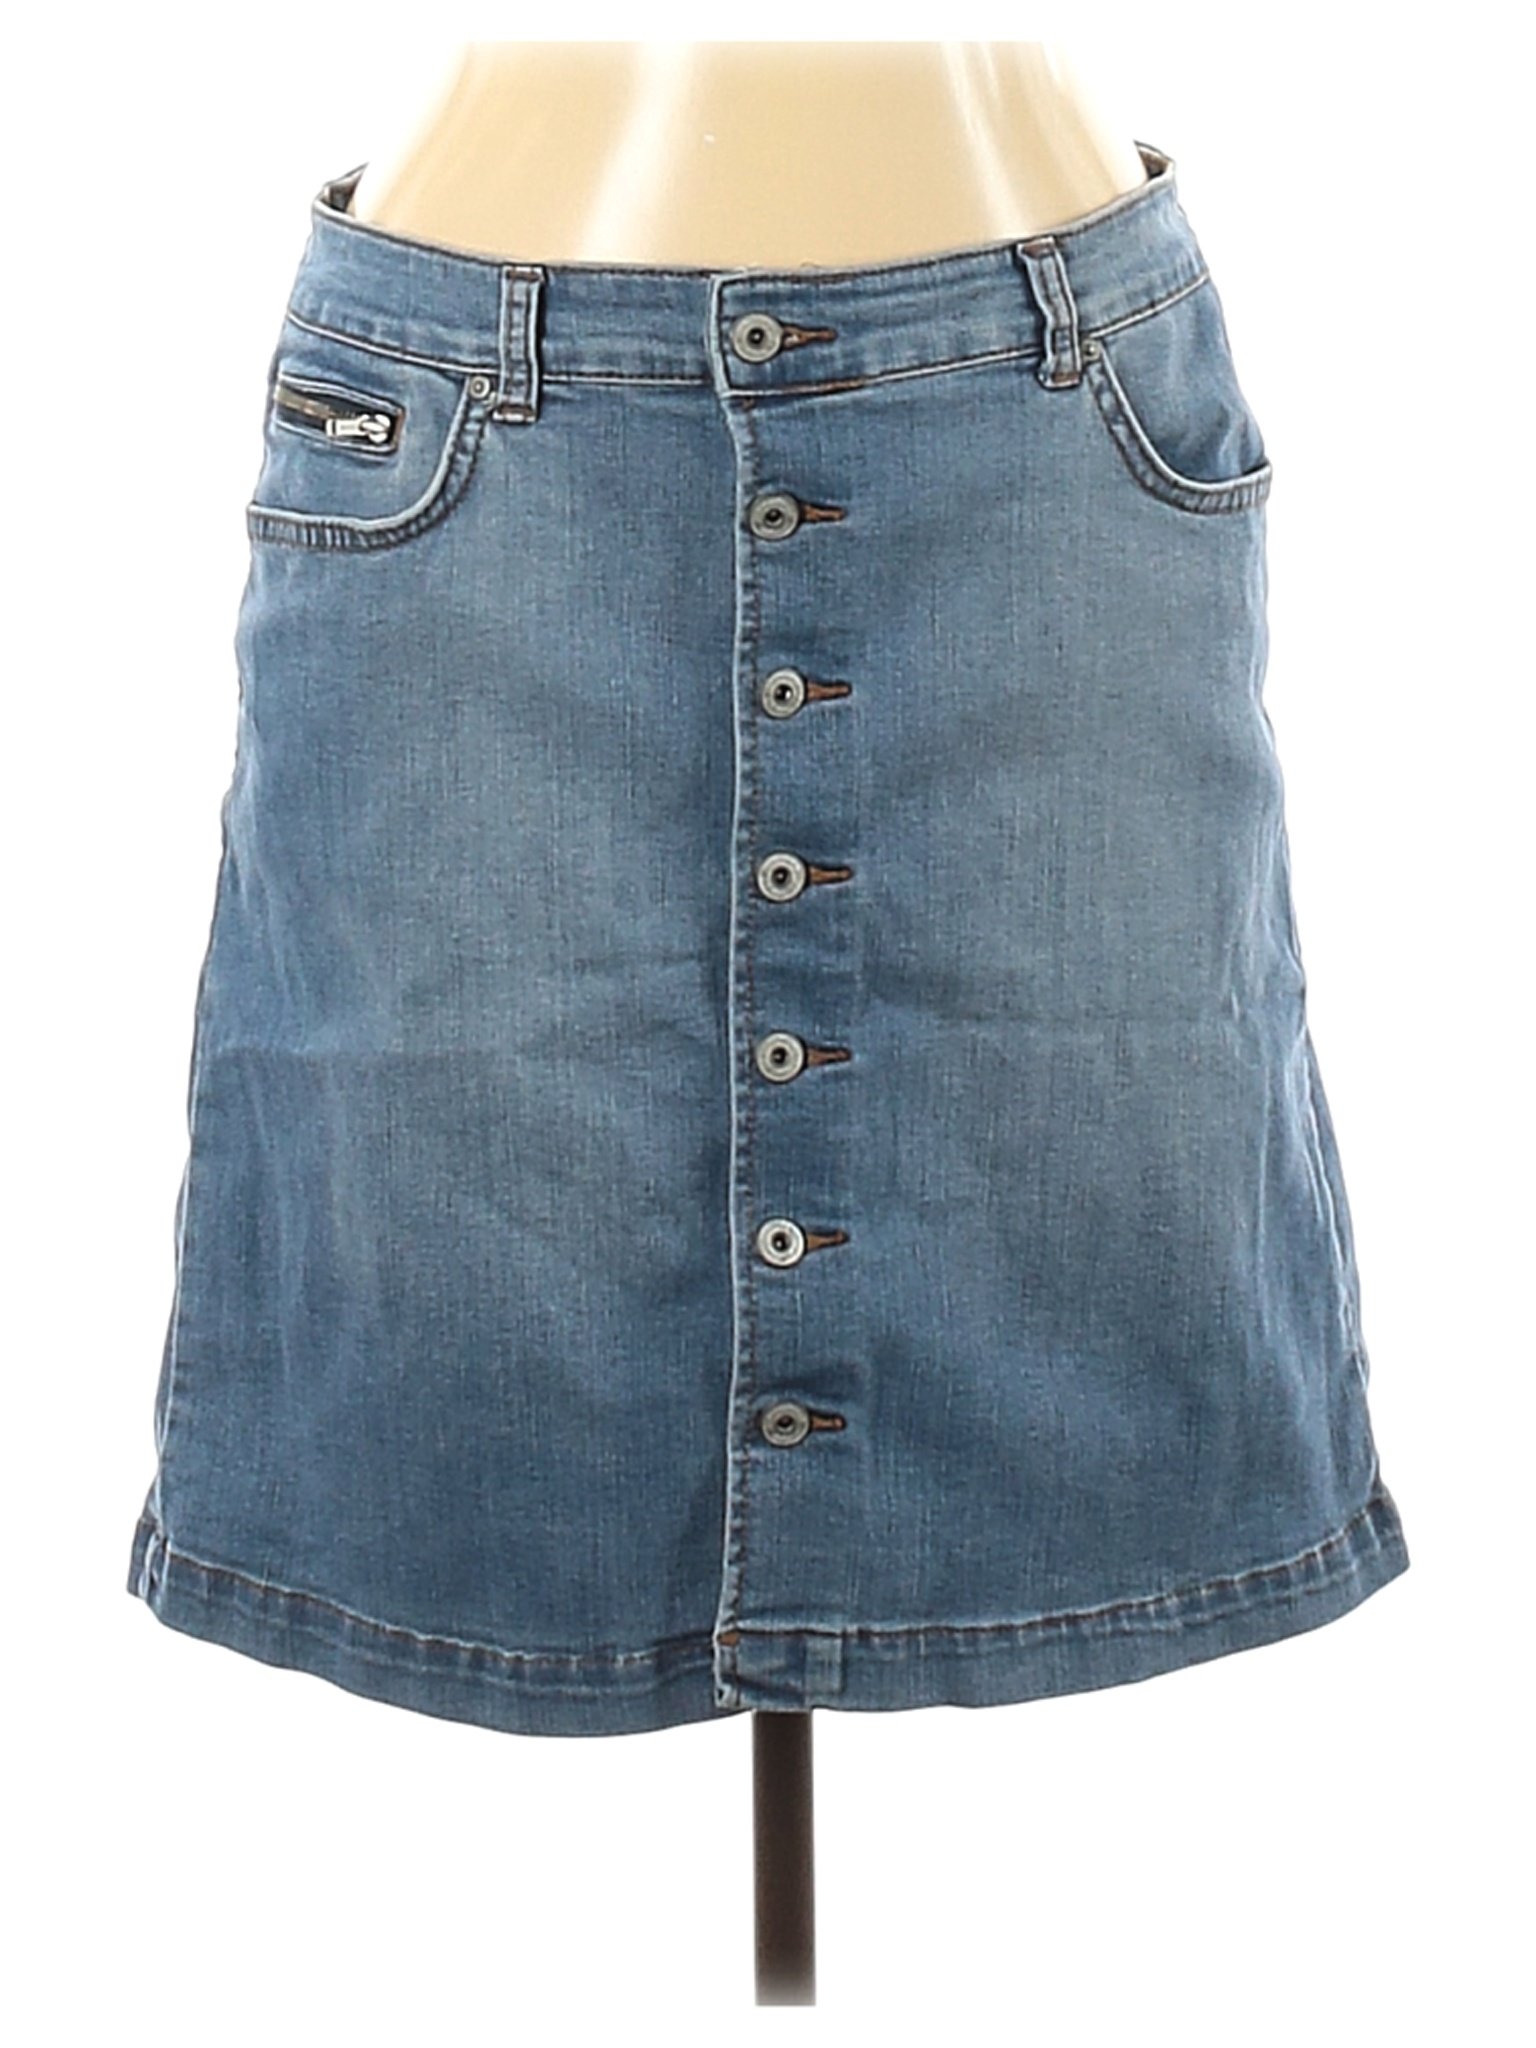 Inc Denim Women Blue Denim Skirt 10 | eBay